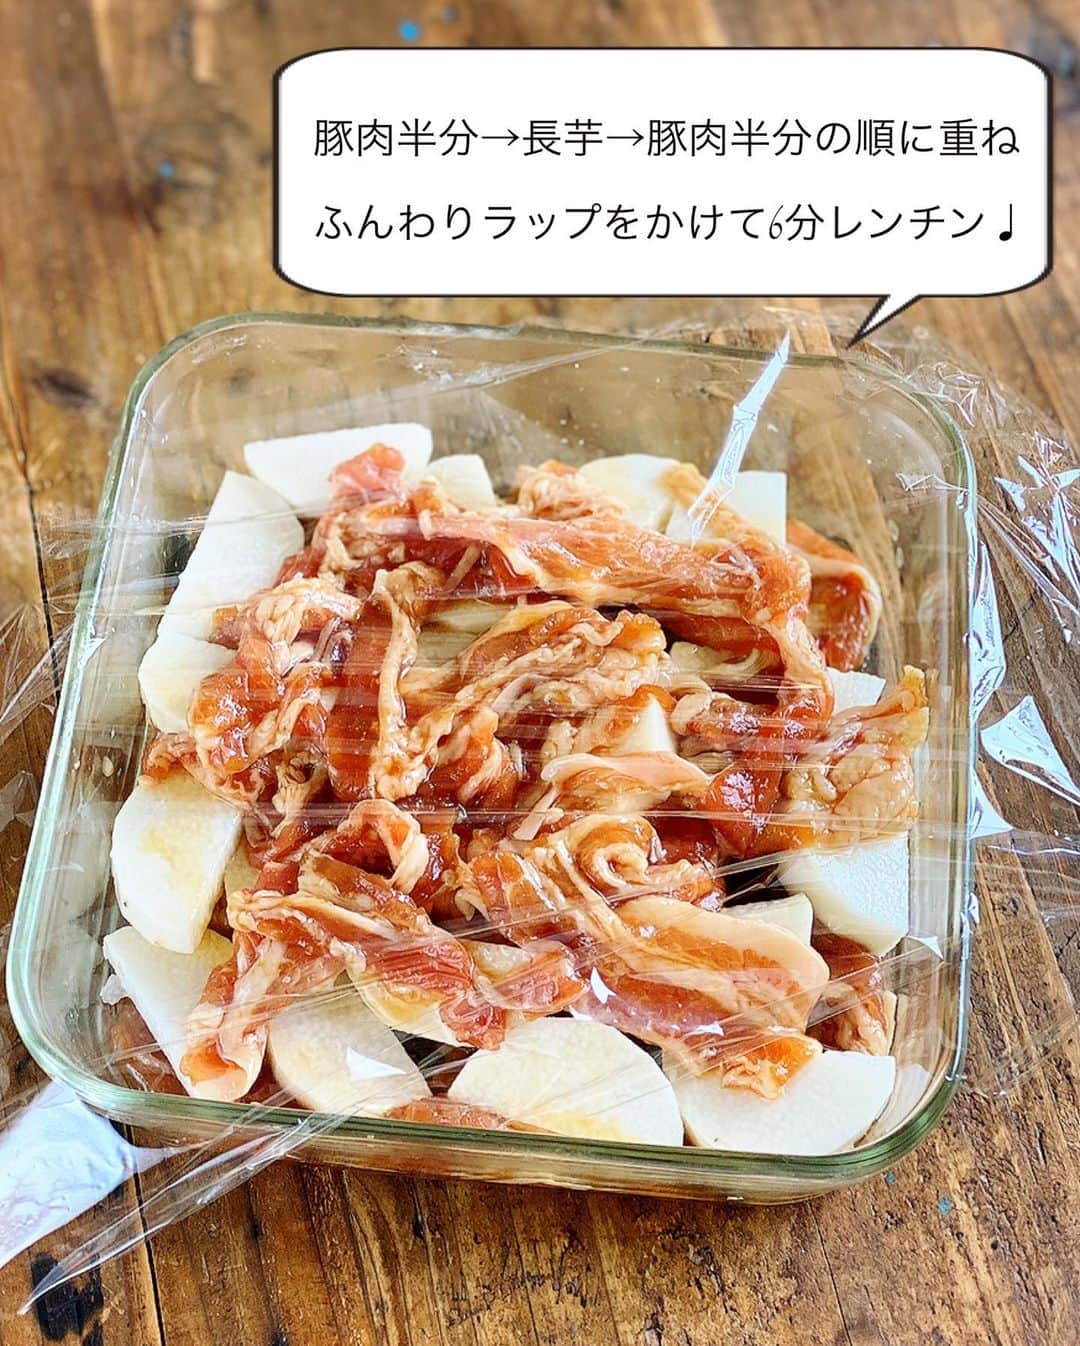 Mizuki【料理ブロガー・簡単レシピ】さんのインスタグラム写真 - (Mizuki【料理ブロガー・簡単レシピ】Instagram)「・﻿ 【レシピ】ーーーーーーーーーーーーーーーー﻿ ♡レンジde6分！豚肉と長芋のうまだれ蒸し♡﻿ ーーーーーーーーーーーーーーーーーーーーー﻿ ﻿ ﻿ ﻿ おはようございます(*^^*)﻿ ﻿ 今日はまたまたレンチンおかず☆﻿ ［豚肉と長芋のうまだれ蒸し］を﻿ ご紹介させていただきます♩﻿ コクのある甘辛味で﻿ がっつりごはんがすすみますよ〜♡﻿ (しかもノンオイル♩)﻿ ﻿ 作り方は超簡単(*´艸`)﻿ ぜ〜んぶ入れてレンチンするだけ！﻿ 加熱時間たった6分で﻿ 豚肉はジューシーに﻿ 長芋は食感よく仕上がります♡﻿ ﻿ あっという間にできるので﻿ よかったらお試し下さいね(*^^*)﻿ ﻿ ﻿ ﻿ ーーーーーーーーーーーーーーーーーーーー﻿ 【2人分】﻿ 豚バラ薄切り肉...150g﻿ 長芋...200g﻿ ●酒・みりん...各大1﻿ ●醤油・砂糖・オイスターソース...各小2﻿ ●片栗粉...小1﻿ 粗挽き黒こしょう・ねぎ...各適量﻿ ﻿ 1.豚肉は4cm長さに切って●を揉み込む。長芋は1cm厚さの半月切りにする。﻿ 2.耐熱皿に豚肉半量→長芋→豚肉半量の順に重ねて入れる。ふんわりラップして600Wのレンジで6分加熱する。﻿ 3.よく混ぜて器に盛り、粗挽き黒こしょうとねぎをトッピングする。﻿ ーーーーーーーーーーーーーーーーーーーー﻿ ﻿ ﻿ ﻿ 《ポイント》﻿ ♦︎盛り付け用の器(耐熱で大きめのもの)で作ってもOK♩洗い物が減ります♩﻿ ﻿ ﻿ ﻿ ﻿ ﻿ ﻿ 🆕🆕🆕🆕🆕🆕🆕🆕🆕🆕﻿ 【🎥YouTube更新しました🎥】﻿ (＊ハイライトから飛べます♩)﻿ ↓﻿ 🍕世界一簡単なホケミピザ﻿ 🧁ホケミで！クッキー&クリームマフィン﻿ 🍳揉んで焼くだけ！やみつきチキン﻿ 🌭材料4つ！アメリカンドッグ﻿ ﻿ ﻿ ﻿ ﻿ ﻿ 5刷重版しました🔻﻿ 本当にありがとうございます🙇‍♀️﻿ ＿＿＿＿＿＿＿＿＿＿＿＿＿＿＿＿＿＿＿﻿ 📕\ \ 新刊発売中 / /📕﻿ 簡単・時短！ 毎日のごはんがラクになる﻿ ✨🦋 【 #Mizukiの今どき和食 】🦋✨﻿ ＿＿＿＿＿＿＿＿＿＿＿＿＿＿＿＿＿＿＿﻿ なるべく少ない材料で﻿ 手間も時間も省きながら﻿ 簡単にできるおいしい和食レシピ♩﻿ 簡単に失敗なくマスターできる一冊で﻿ もっと気軽に、カジュアルに﻿ 和食を楽しんで下さいね(*^^*)﻿ ＿＿＿＿＿＿＿＿＿＿＿＿＿＿＿＿＿＿＿﻿ ﻿ ﻿ ﻿  ＿＿＿＿＿＿＿＿＿＿＿＿＿＿＿＿＿﻿ 🎀6刷重版しました🎀﻿ 混ぜて焼くだけ。はじめてでも失敗しない！﻿ 【#ホットケーキミックスのお菓子 】﻿ ﻿ 一冊まるっとホケミスイーツ♩﻿ 普段のおやつから﻿ 特別な日にも使えるレシピを﻿ この一冊に詰め込みました(*^^*)﻿ ホットケーキミックスを使えば﻿ 簡単に本格的なお菓子が作れますよ♡﻿ ＿＿＿＿＿＿＿＿＿＿＿＿＿＿＿＿＿﻿ ﻿ ⭐️ストーリー、ハイライト、プロフ画面に﻿ 本のURLを貼らせていただいております♩﻿ →(@mizuki_31cafe )﻿ ﻿ ﻿ ﻿ ﻿ #豚肉#長芋#レンジ#レンチンおかず#ノンオイル#Mizuki#簡単レシピ#時短レシピ#節約レシピ#料理#レシピ#フーディーテーブル#マカロニメイト#おうちごはん#デリスタグラマー#料理好きな人と繋がりたい#おうちごはん#写真好きな人と繋がりたいlover#foodpic#follow#cooking#recipe#lin_stagrammer#foodporn#yummy#豚肉と長芋のうまだれ蒸しm」6月30日 8時03分 - mizuki_31cafe